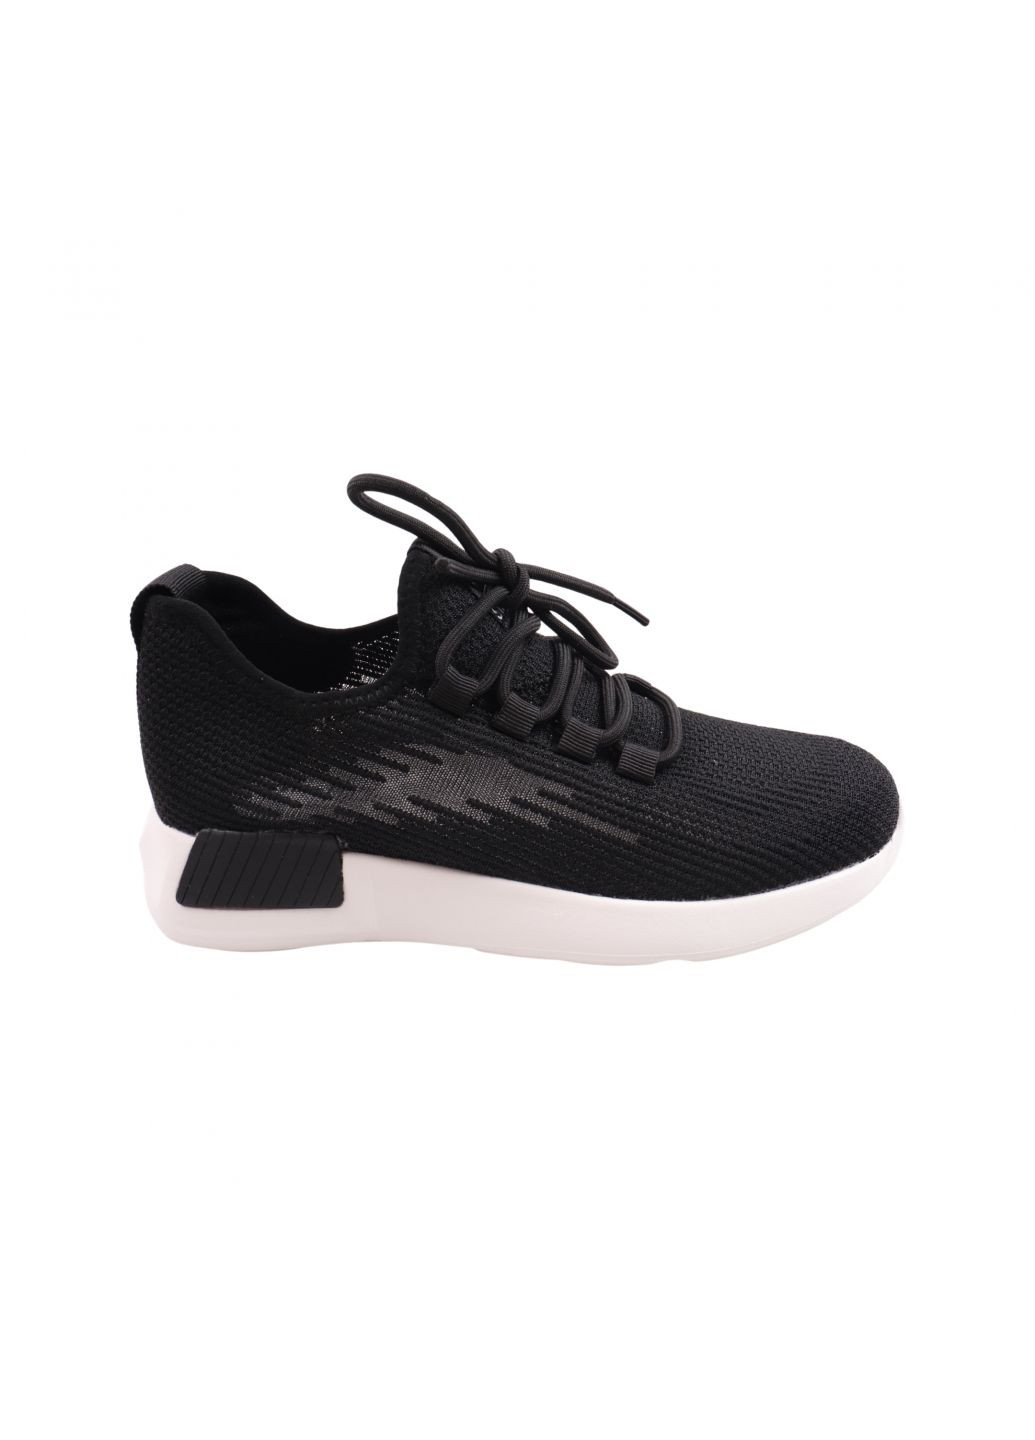 Чорні кросівки жіночі чорні текстиль Berisstini 141-23LK